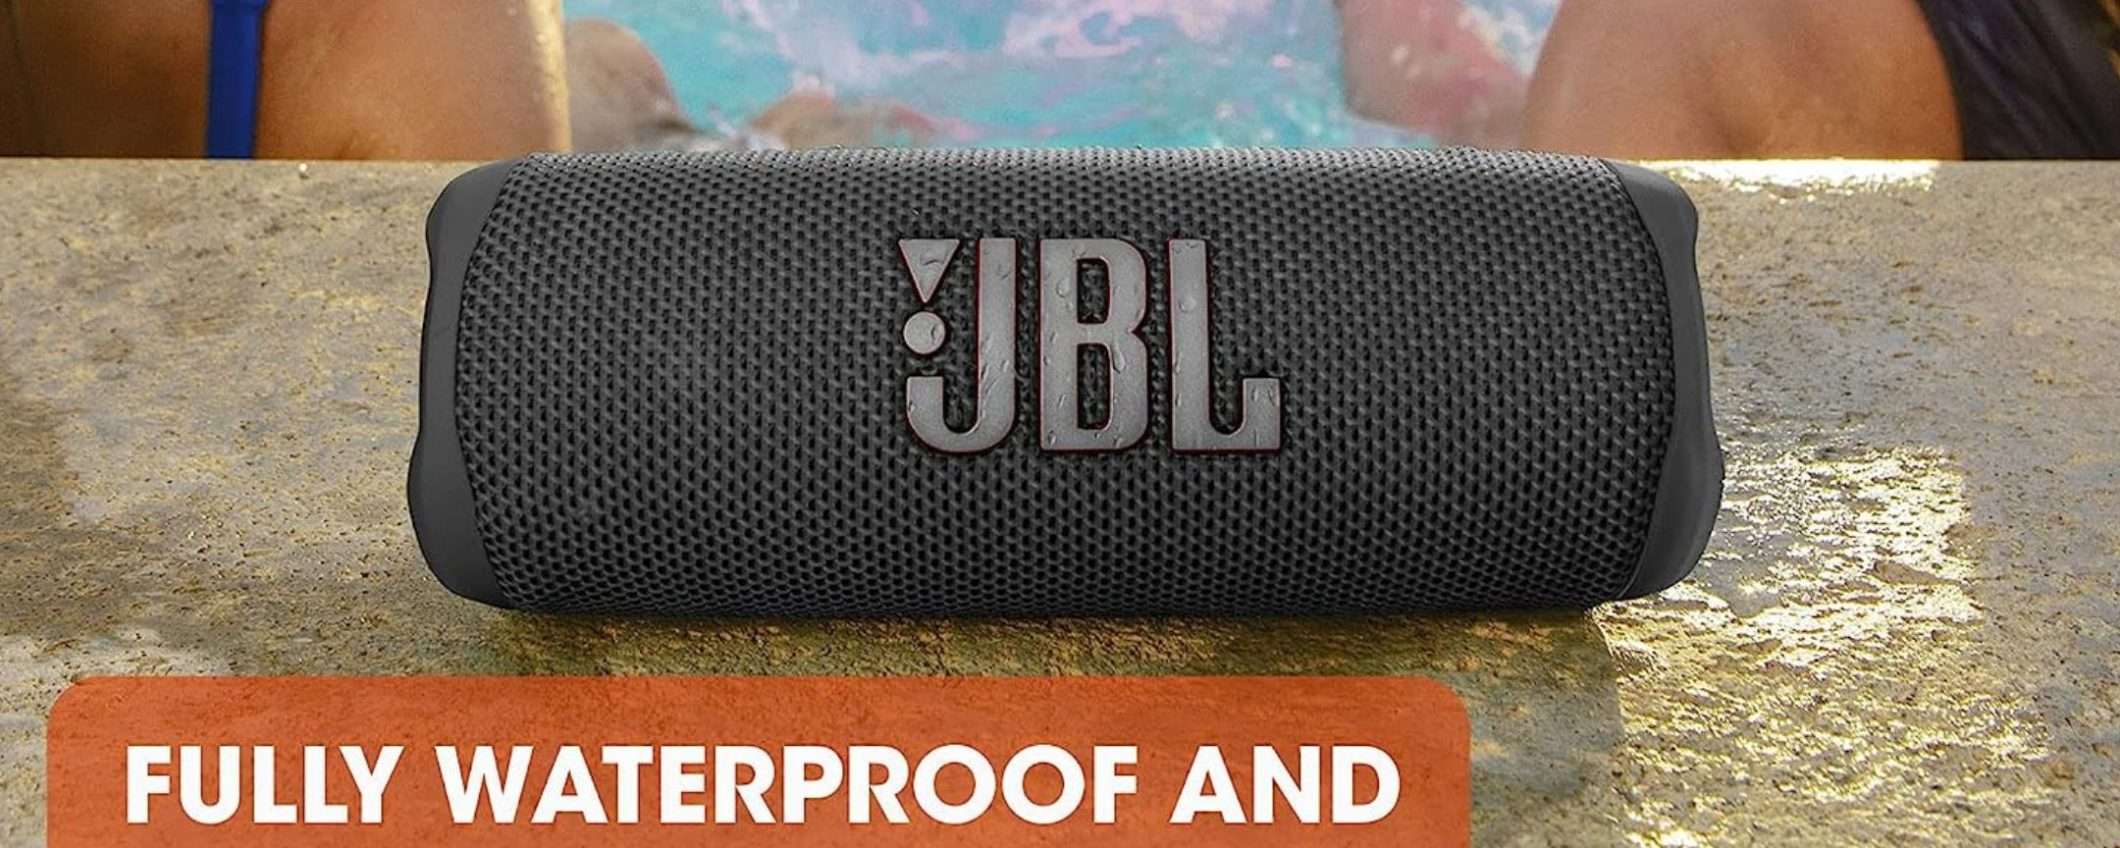 JBL Flip 6 in ENORME sconto: suono premium scontatissimo su Amazon